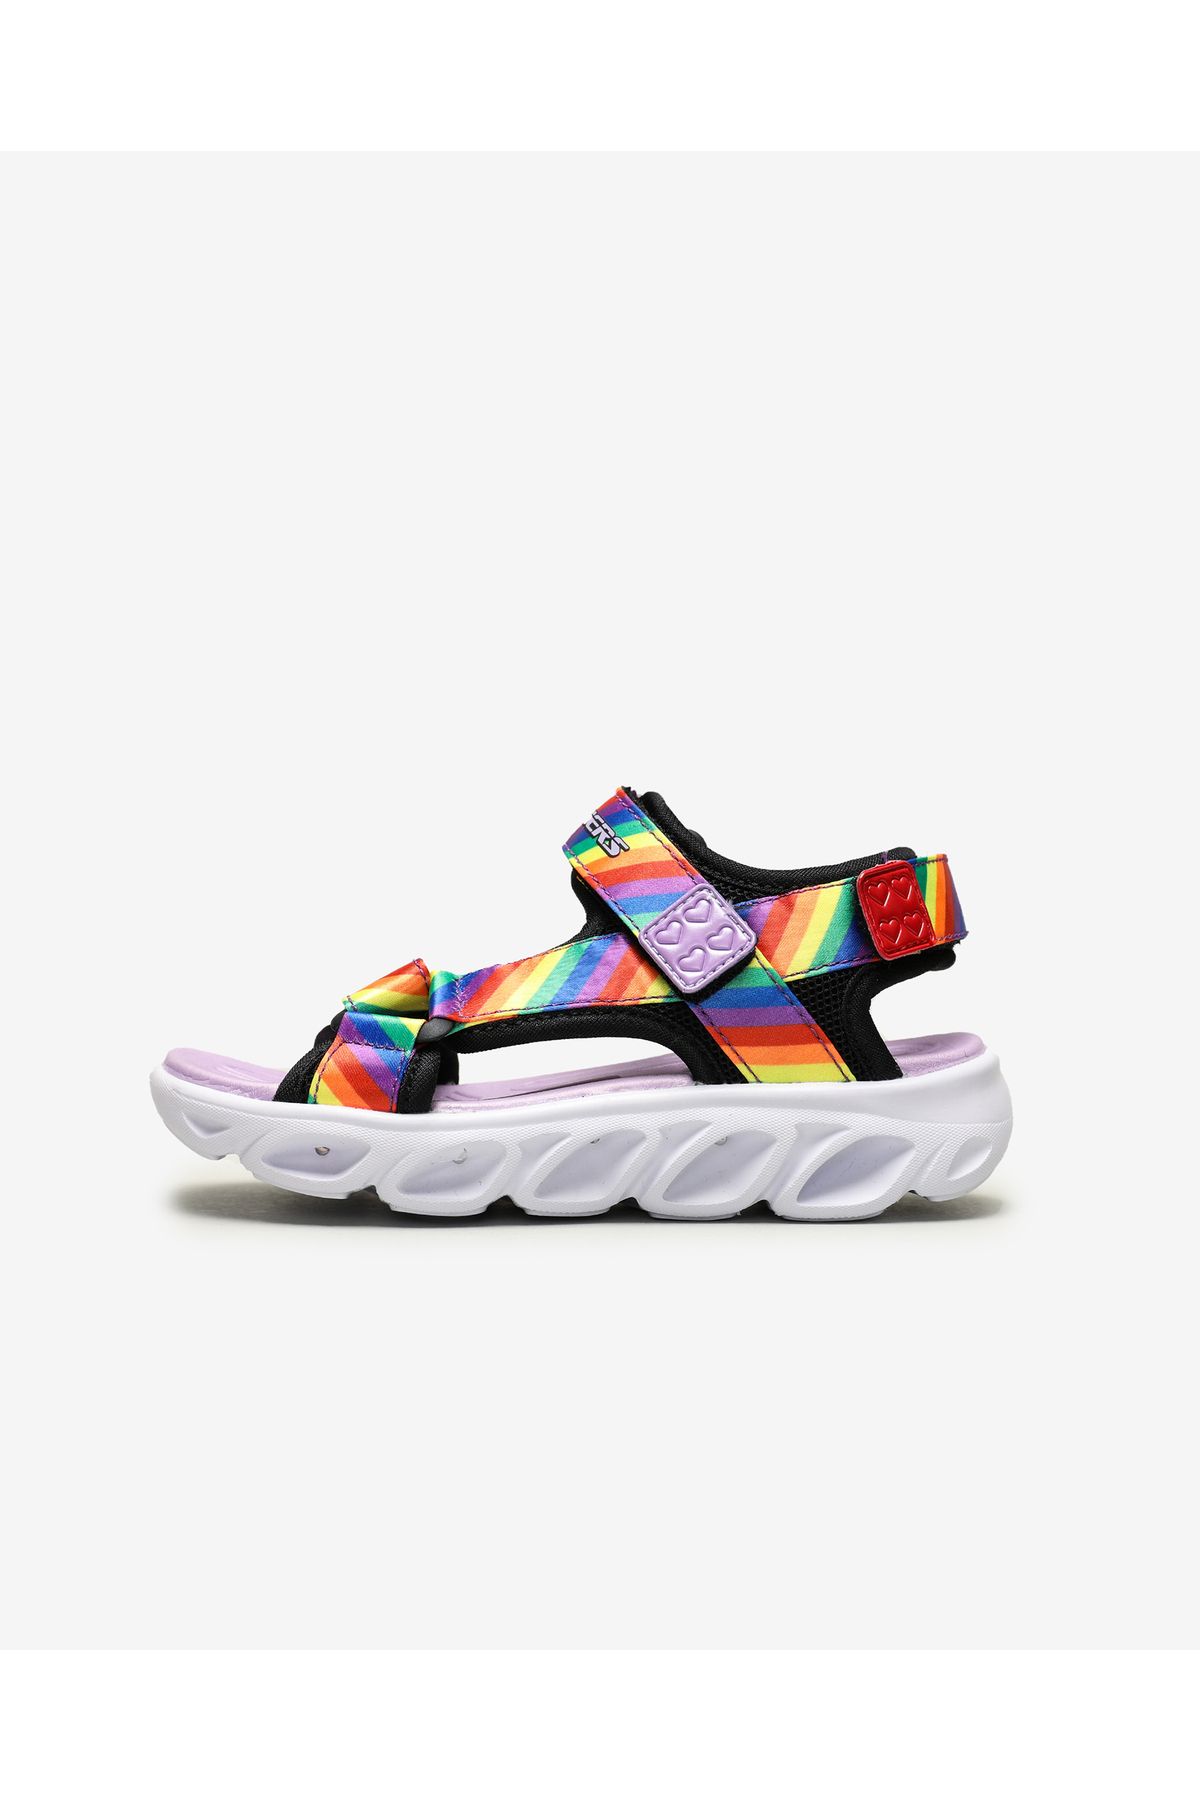 Skechers Hypno - Splash - Rainbow Lights Büyük Kız Çocuk Siyah Işıklı Sandalet 20218l Bkmt